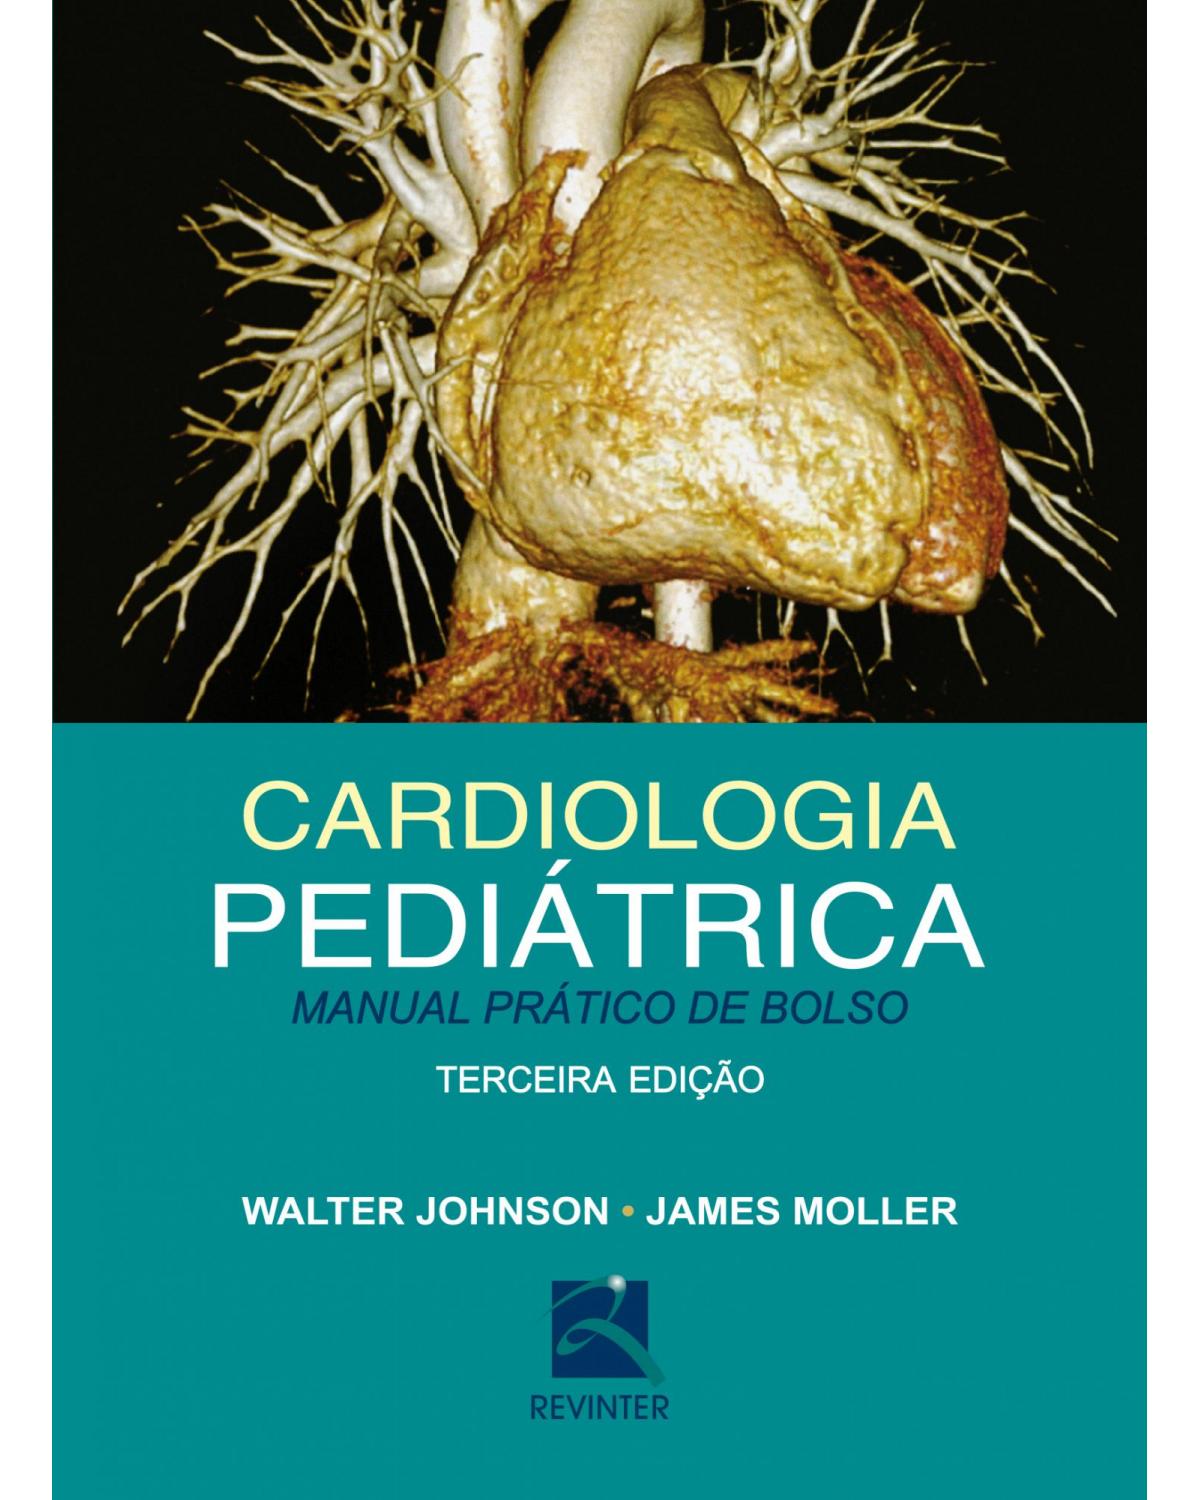 Cardiologia Pediátrica - Manual Prático de Bolso - 3ª Edição | 2016